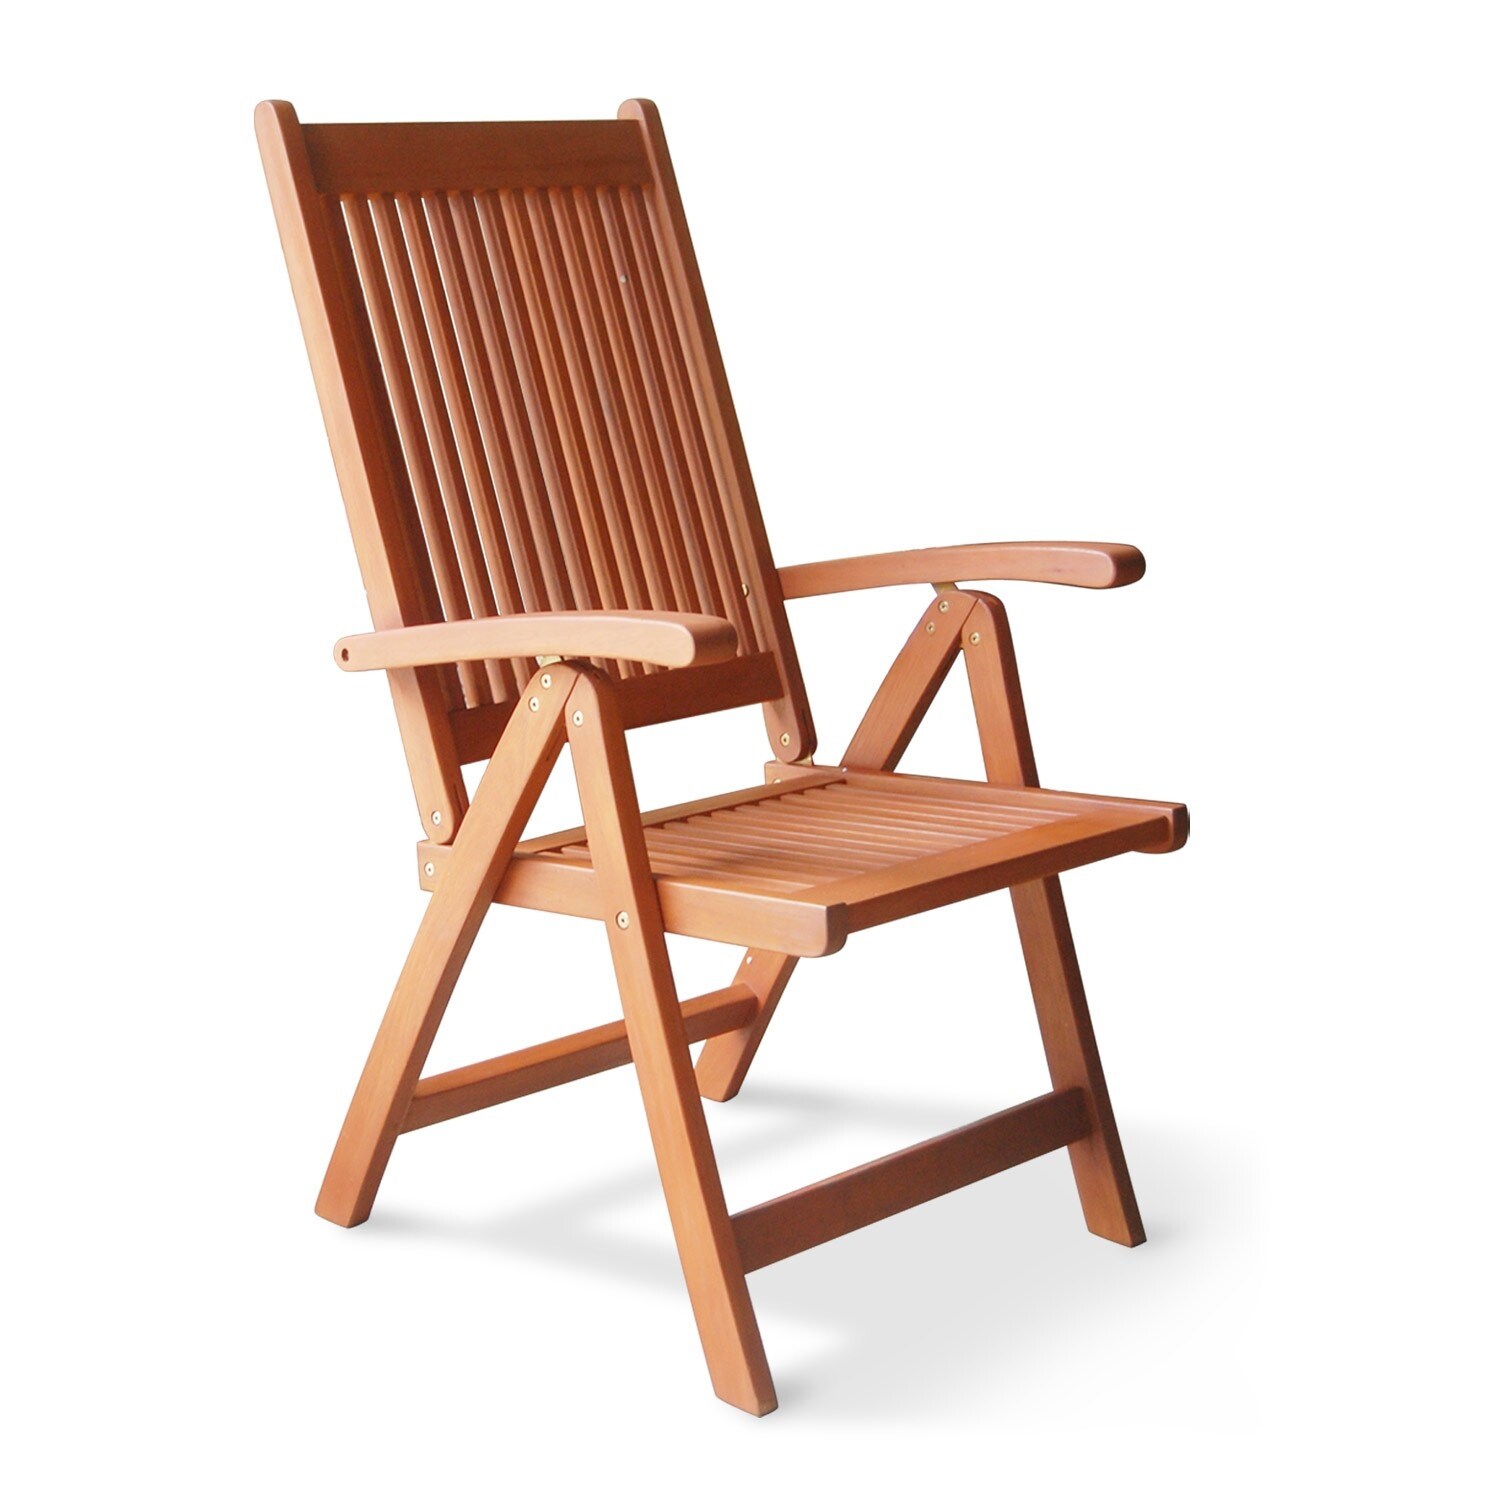 Outdoor Reclining Chair - 26 W X 26 D X 44 H